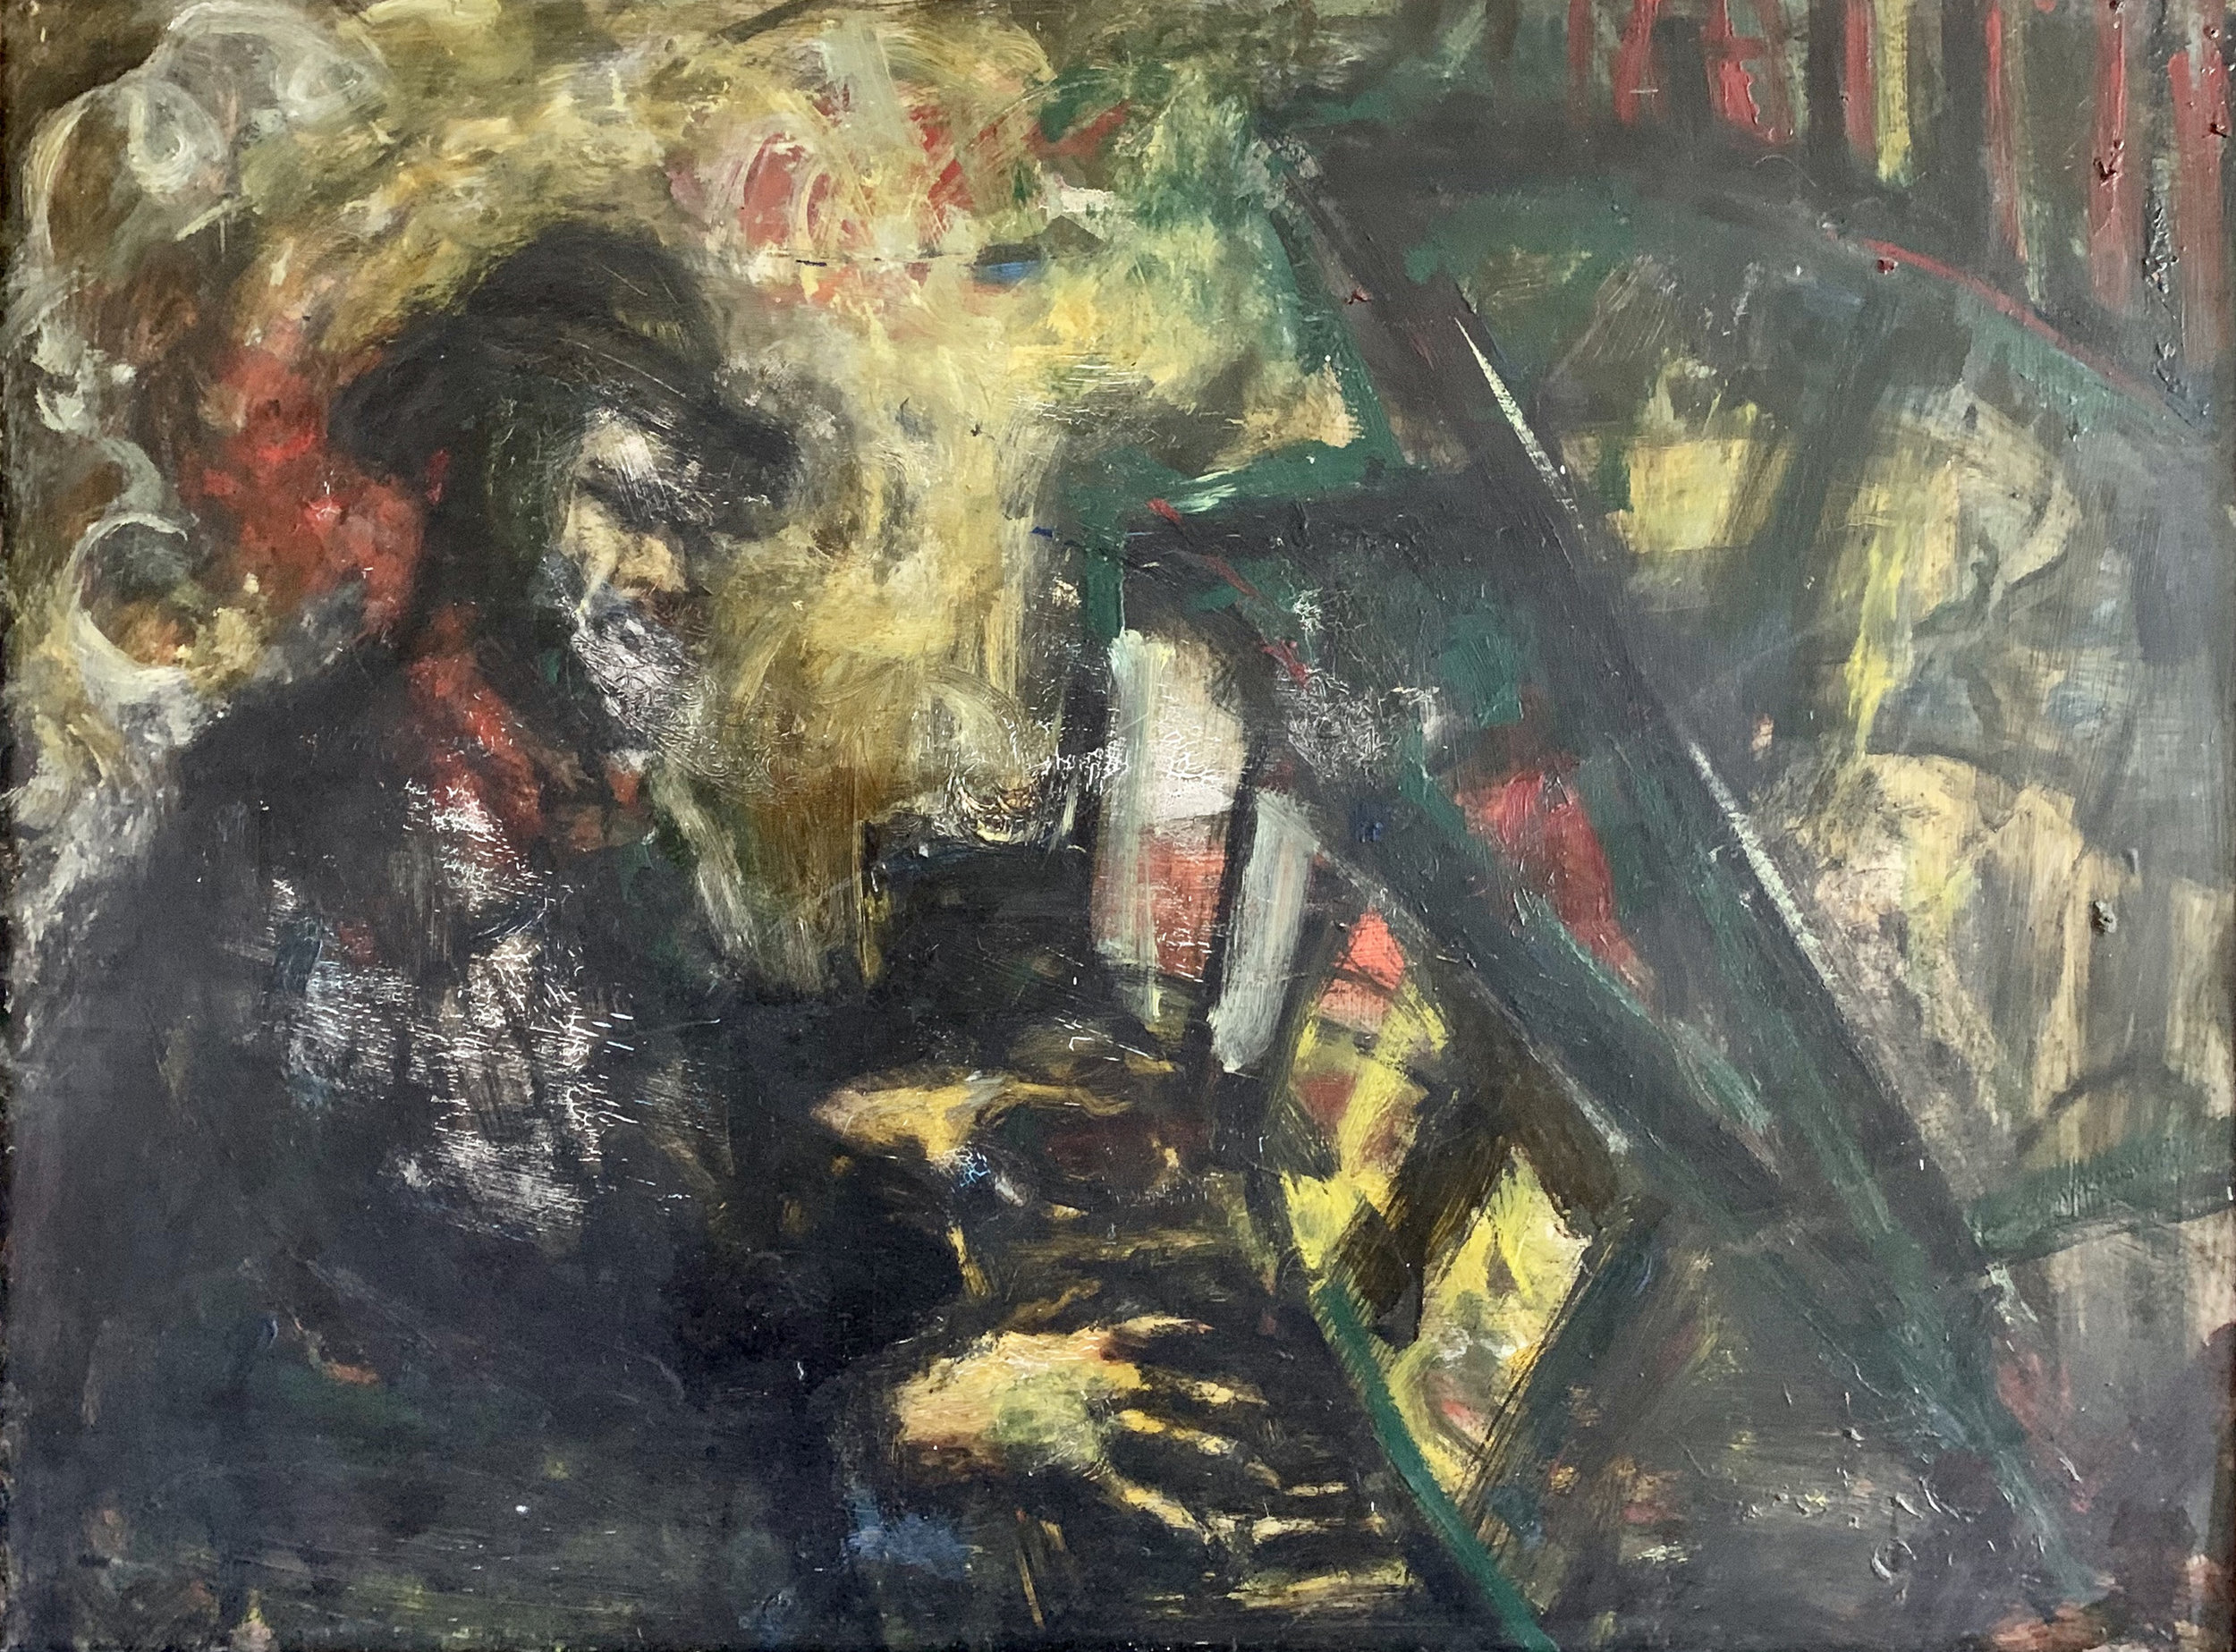 Thelonious Monk at Piano